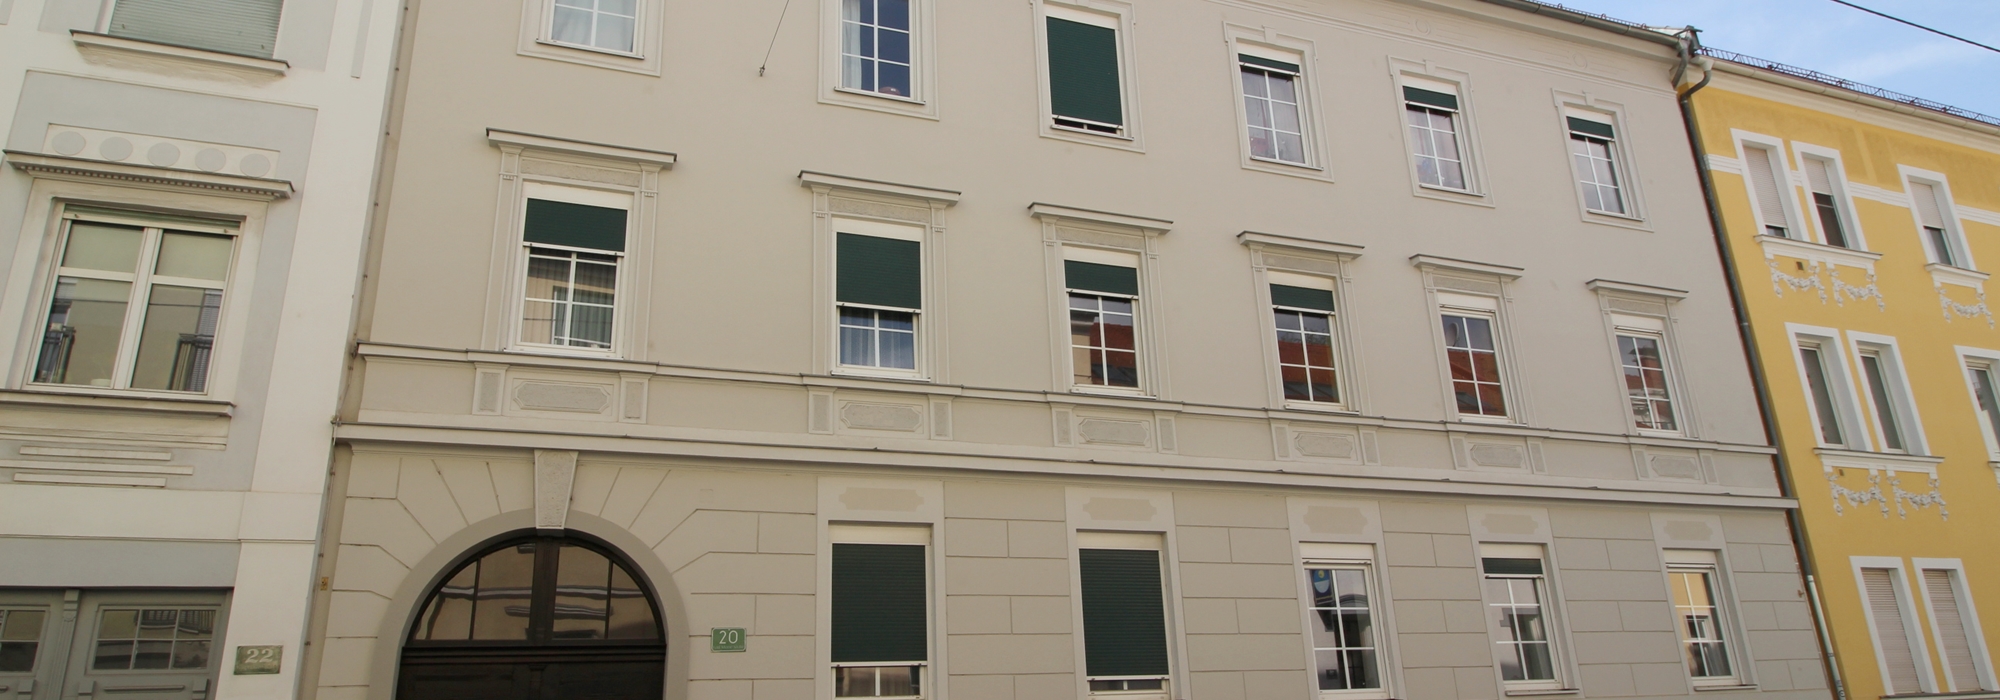 Sehr schöne 2-Zimmer Maisonette mit 58,15 m² in Alt Eggenberg mit kleiner Terrasse zu verkaufen